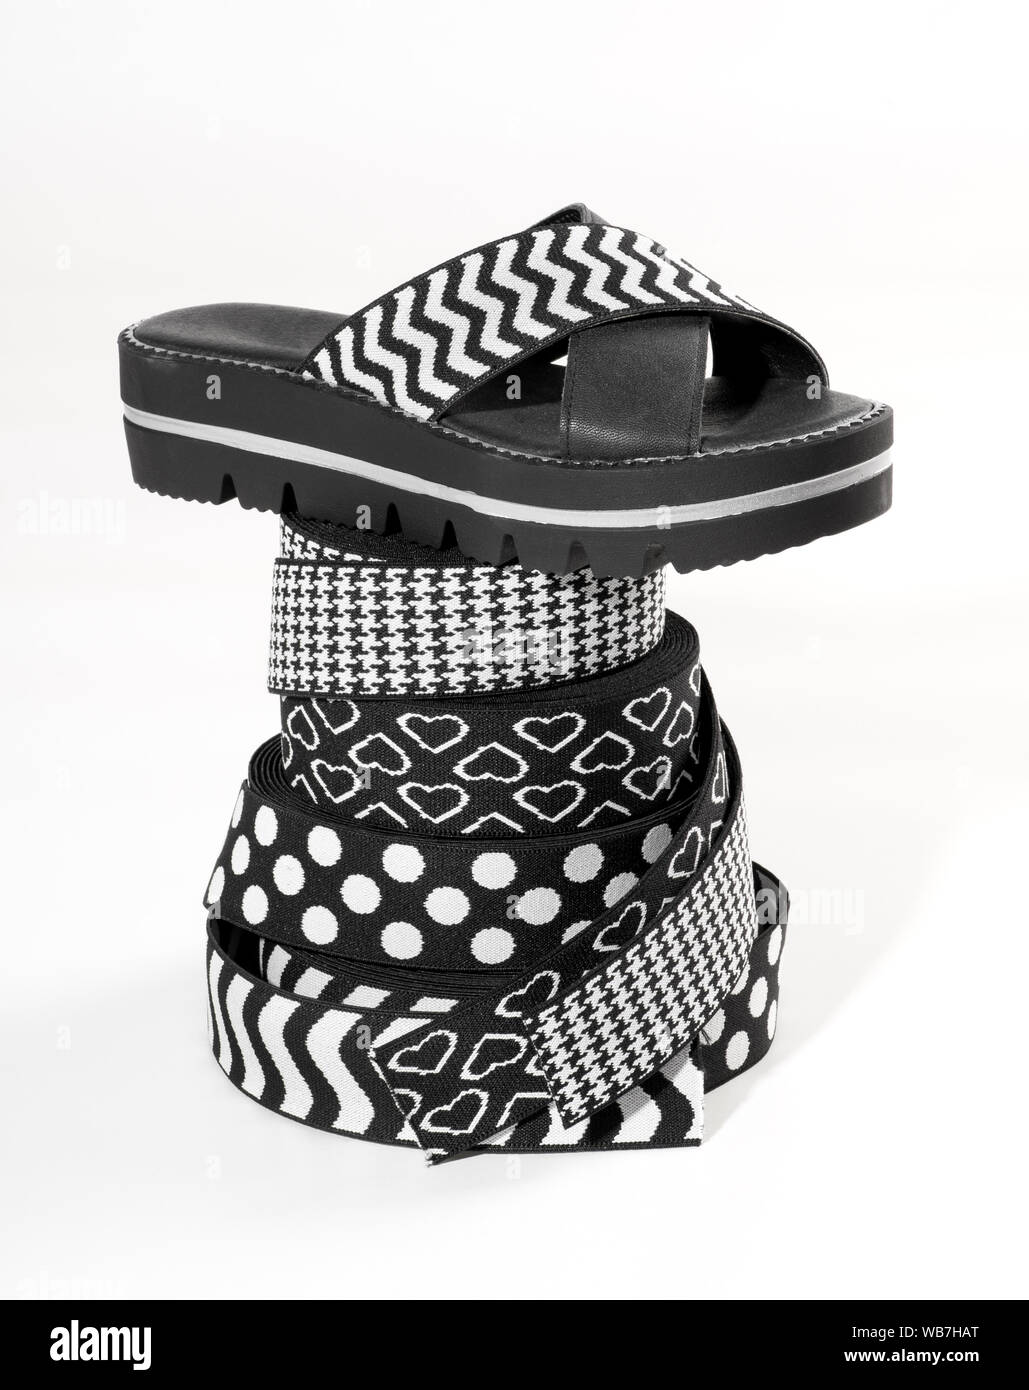 Sandale d'été franchi avec noir et blanc à motifs audacieusement les bandes élastiques pour l'empeigne affiché en équilibre sur une pile de rouleaux décoratifs d'élastique avec Banque D'Images